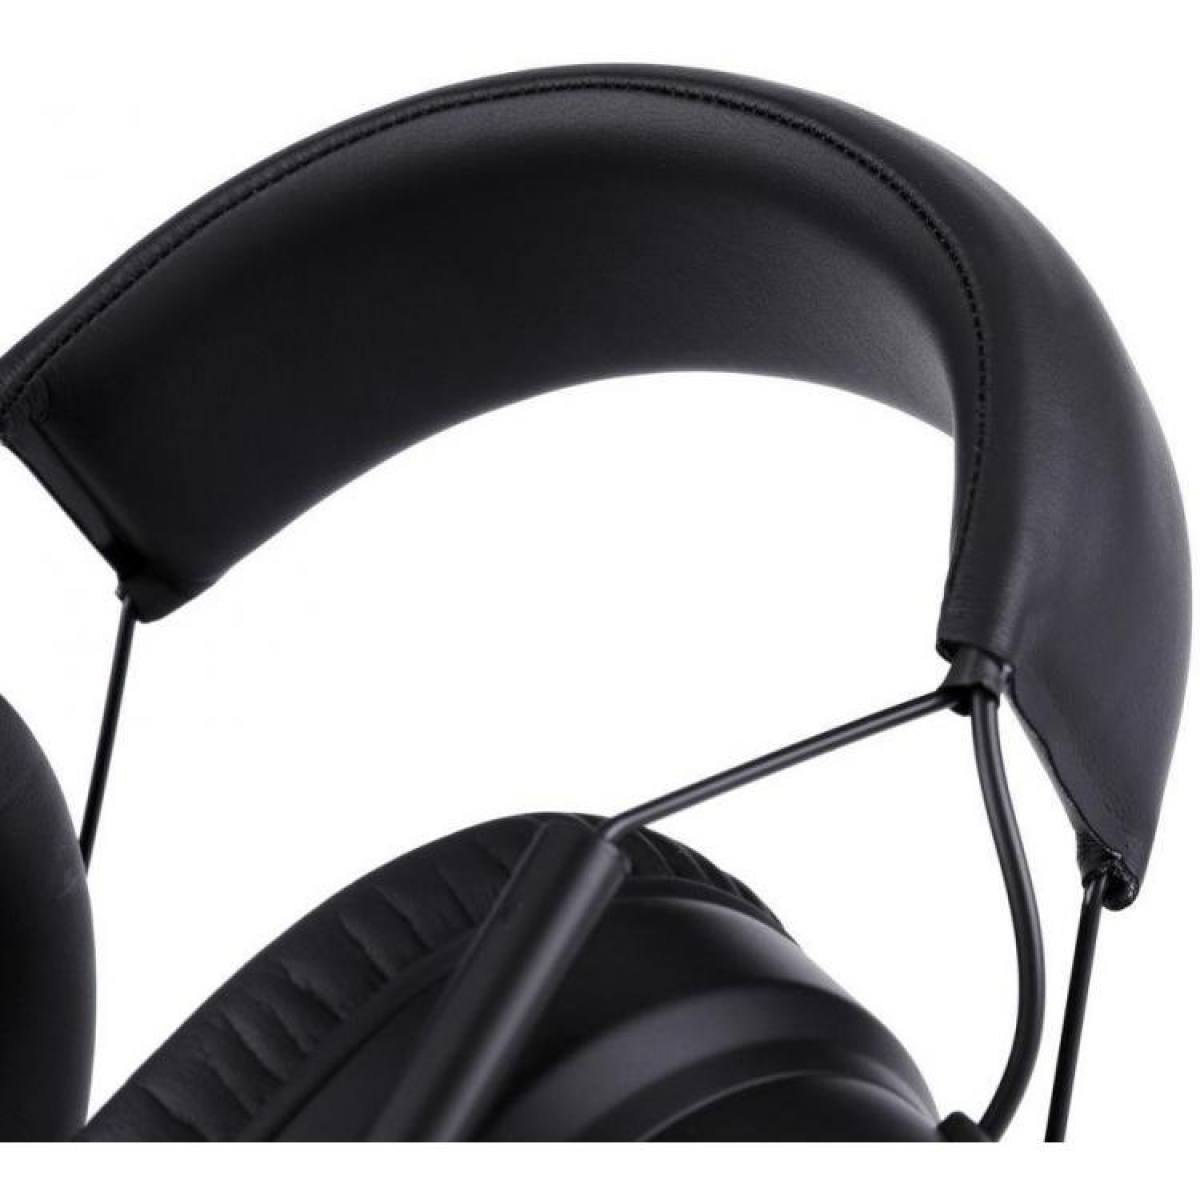 Tai nghe Somic G936 - 7.1 Gaming Headset